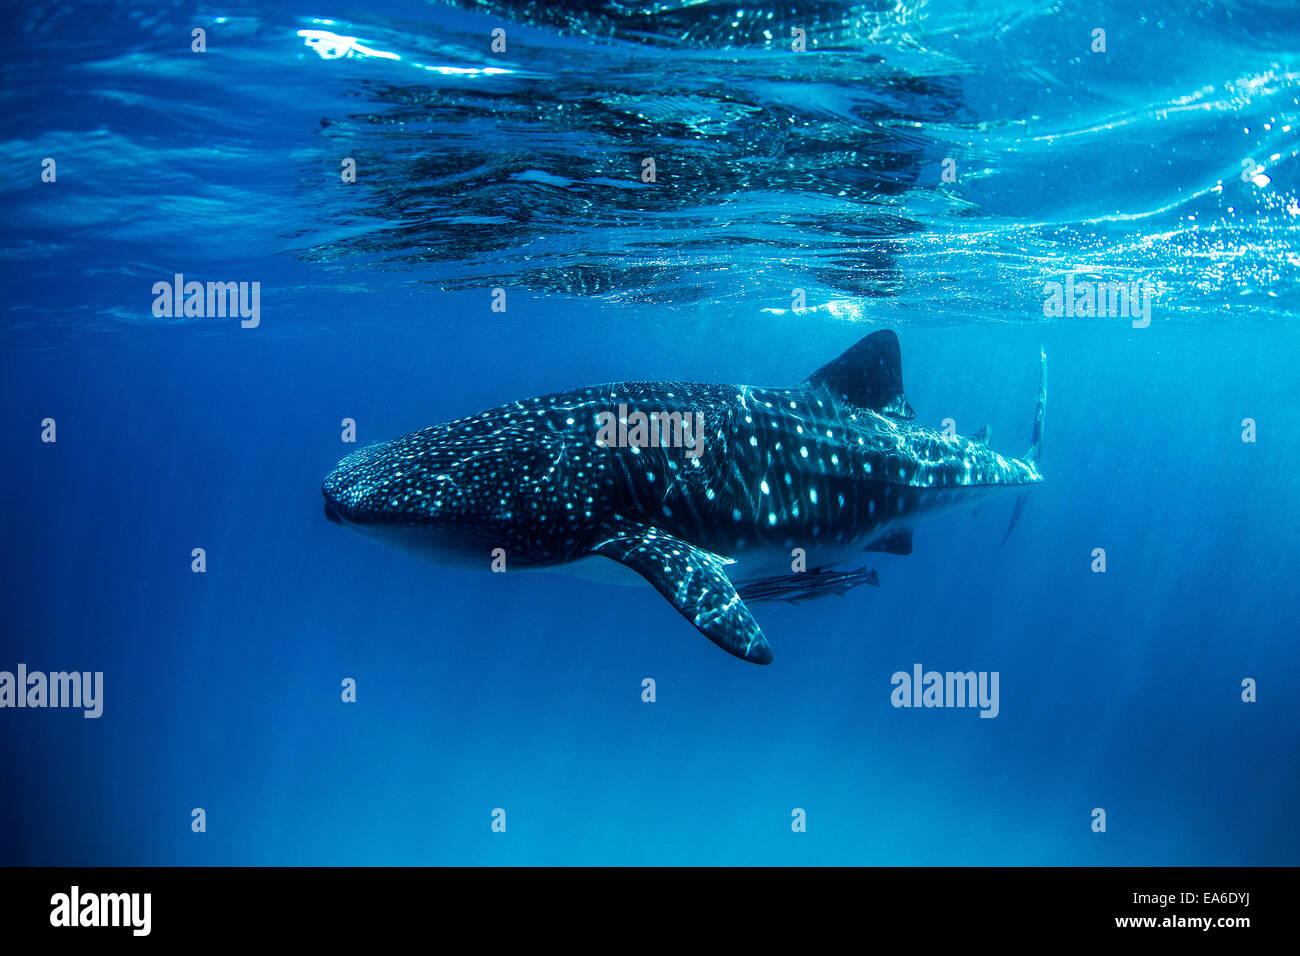 Tiburón ballena con remoras nadando en el océano Foto de stock